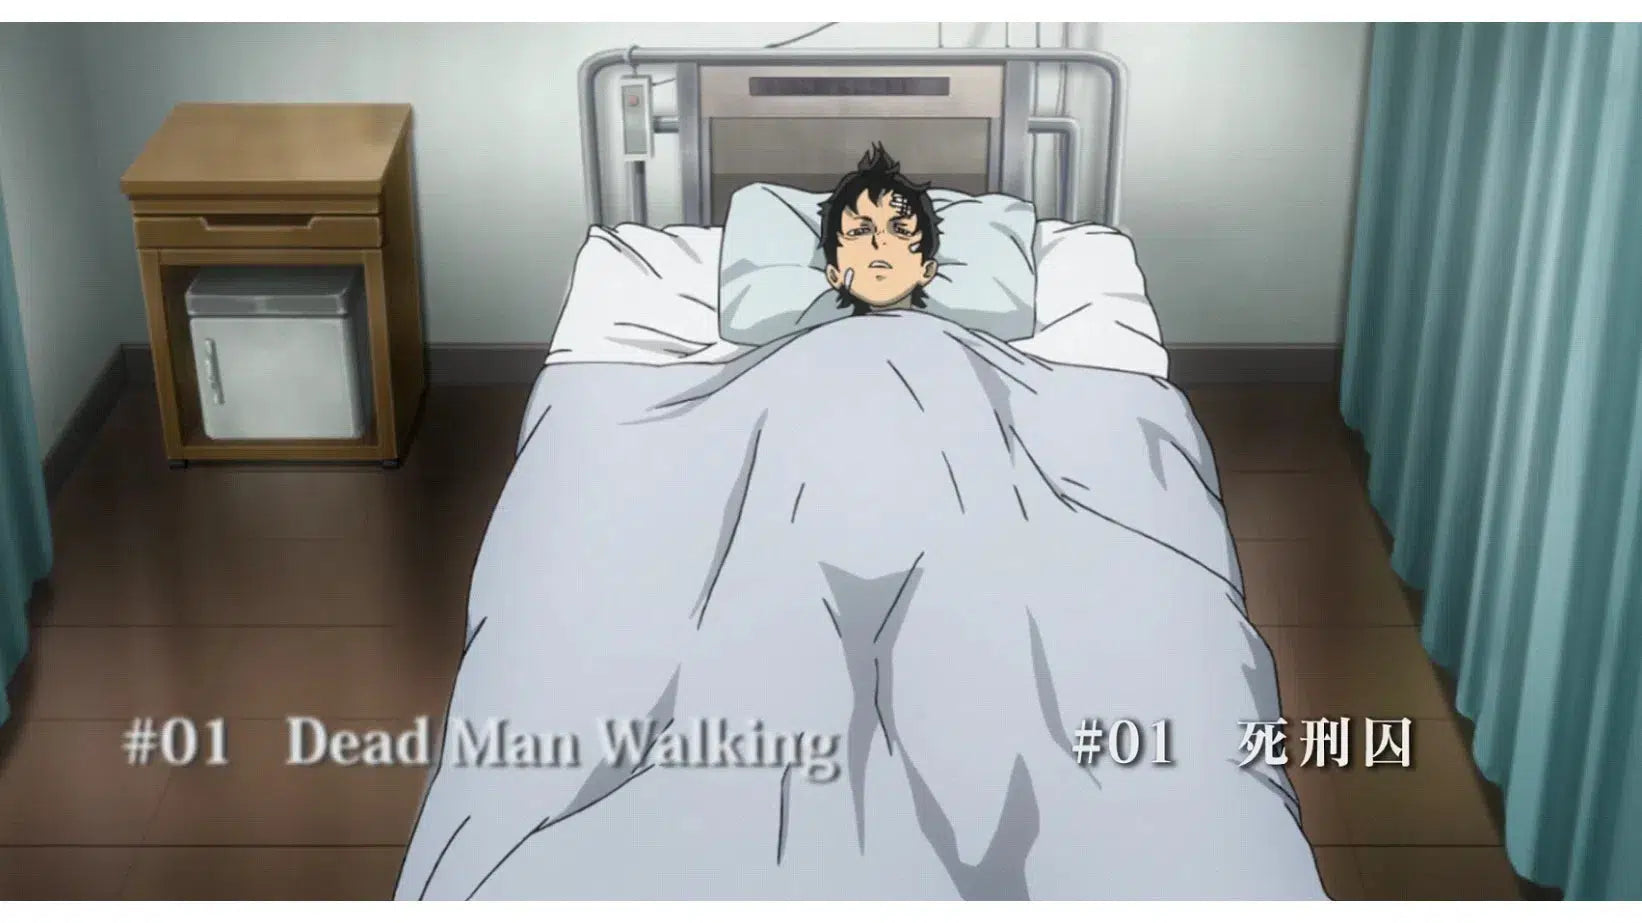 Deadman Wonderland Episode 01 Dead Man Walking